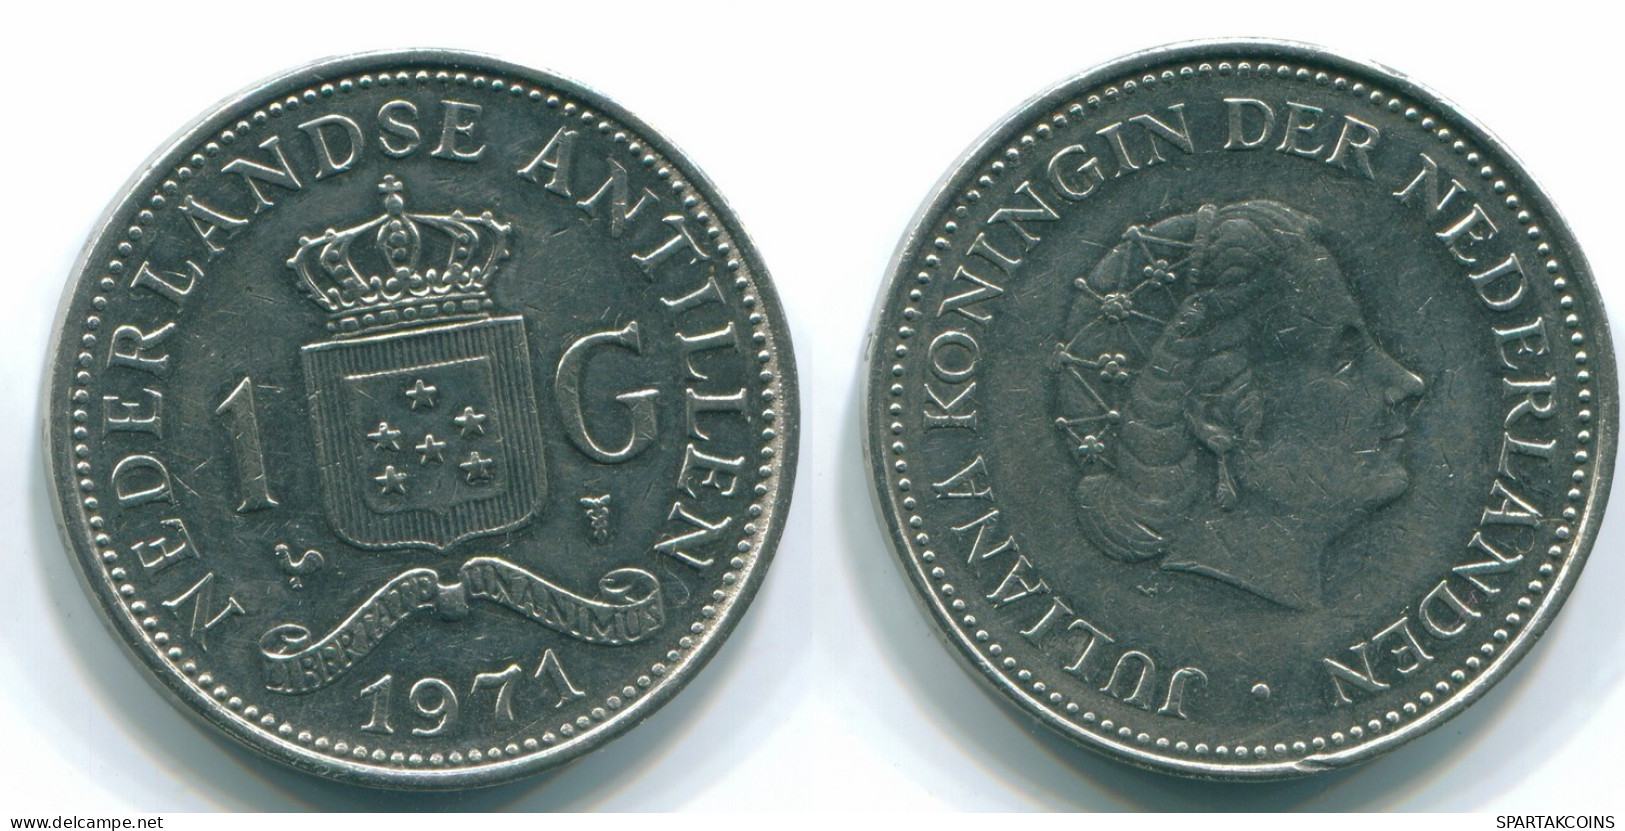 1 GULDEN 1971 ANTILLES NÉERLANDAISES Nickel Colonial Pièce #S11913.F.A - Nederlandse Antillen